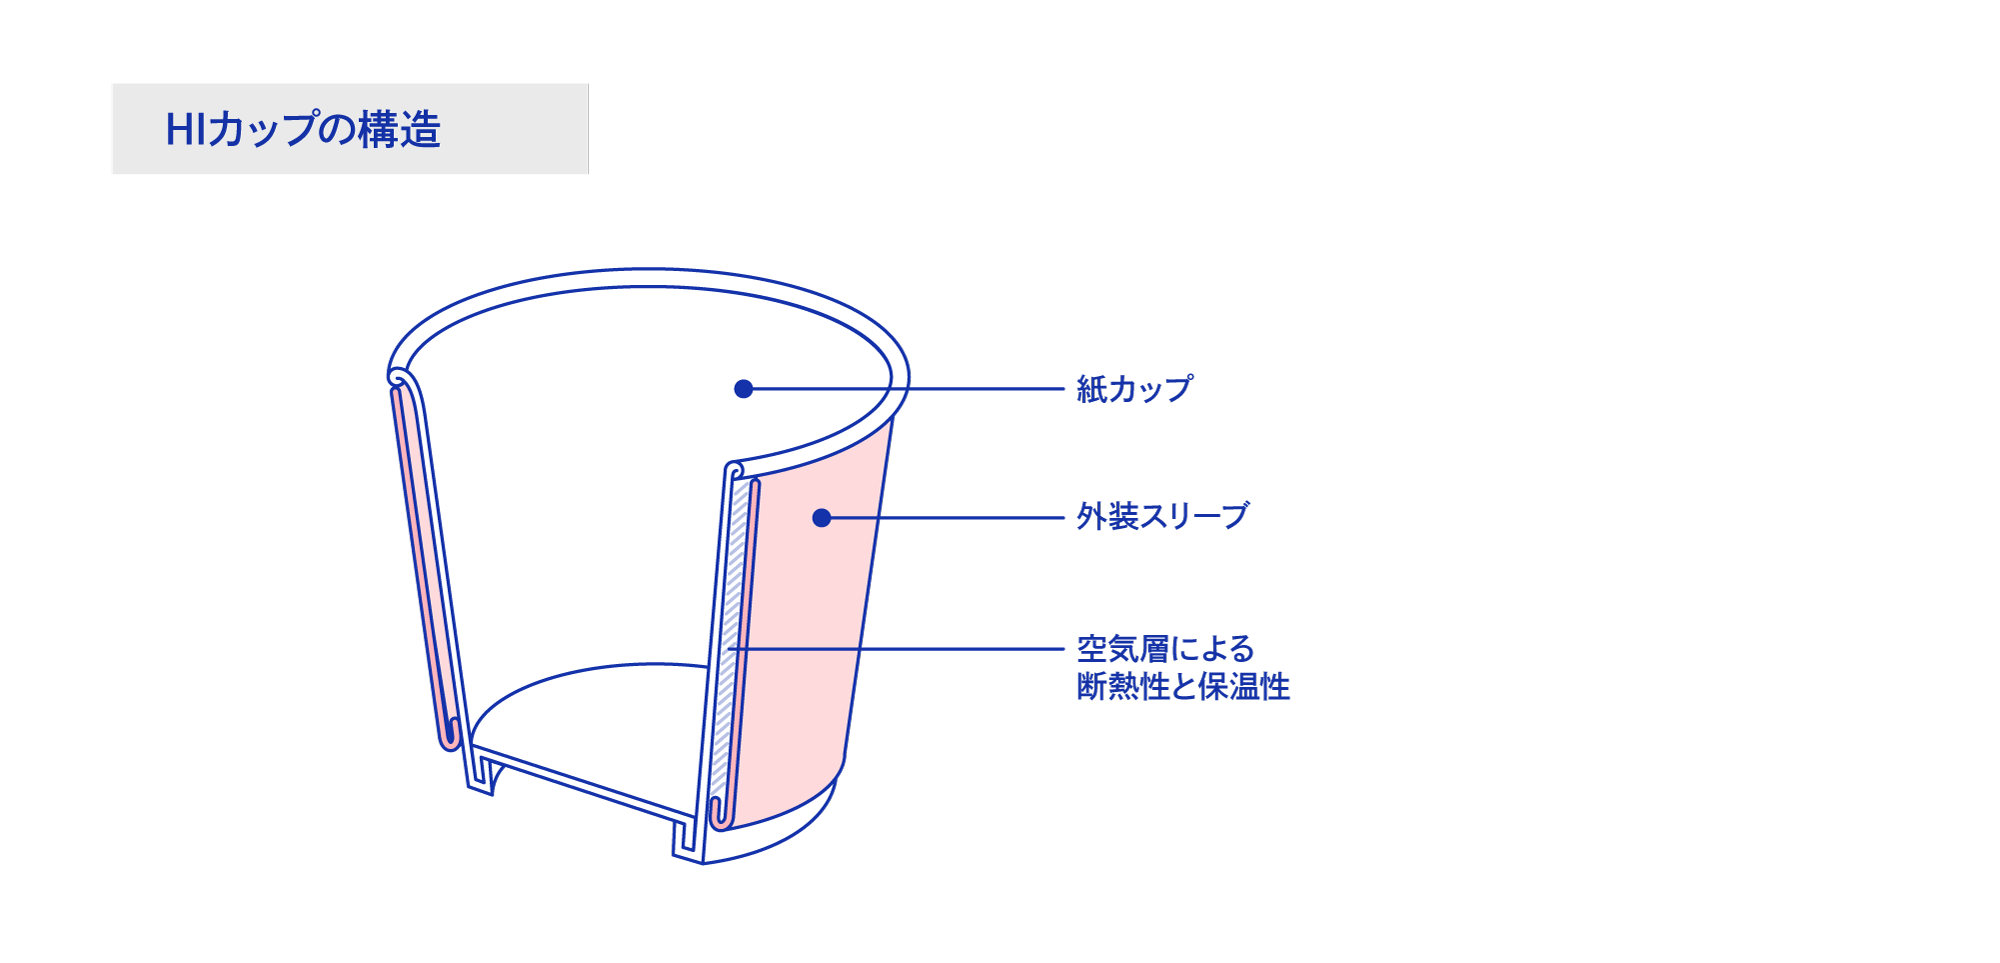 HIカップの構造図